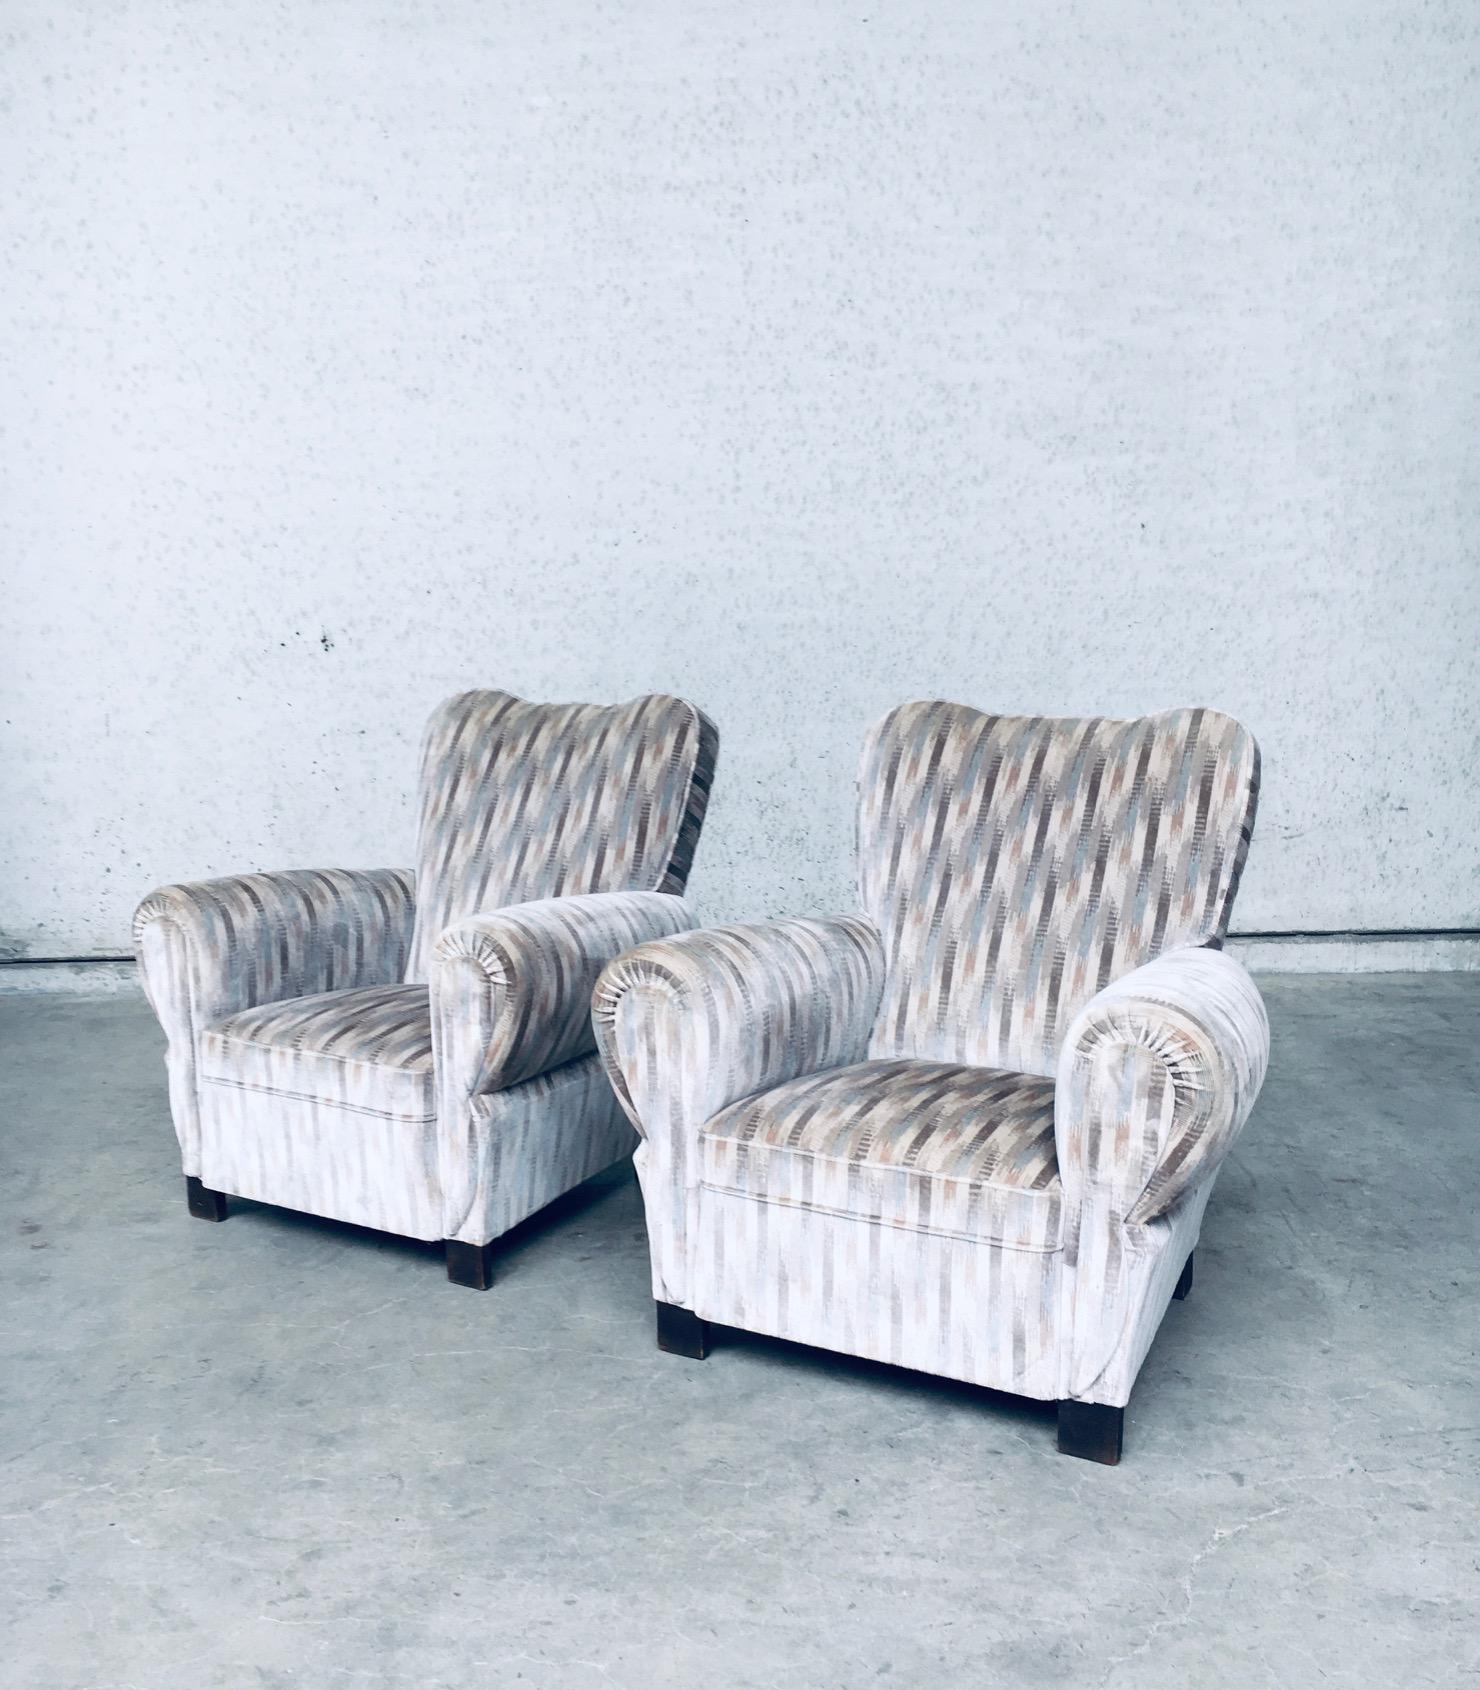 Vintage Art Deco Design Lounge Sessel Set, hergestellt in Belgien in den 1940er Jahren. Schöne geformte Stühle mit OP Art Samtstoff, der wahrscheinlich nicht original ist und irgendwo in den 1970er/80er Jahren neu gepolstert wurde. Sie sind beide in